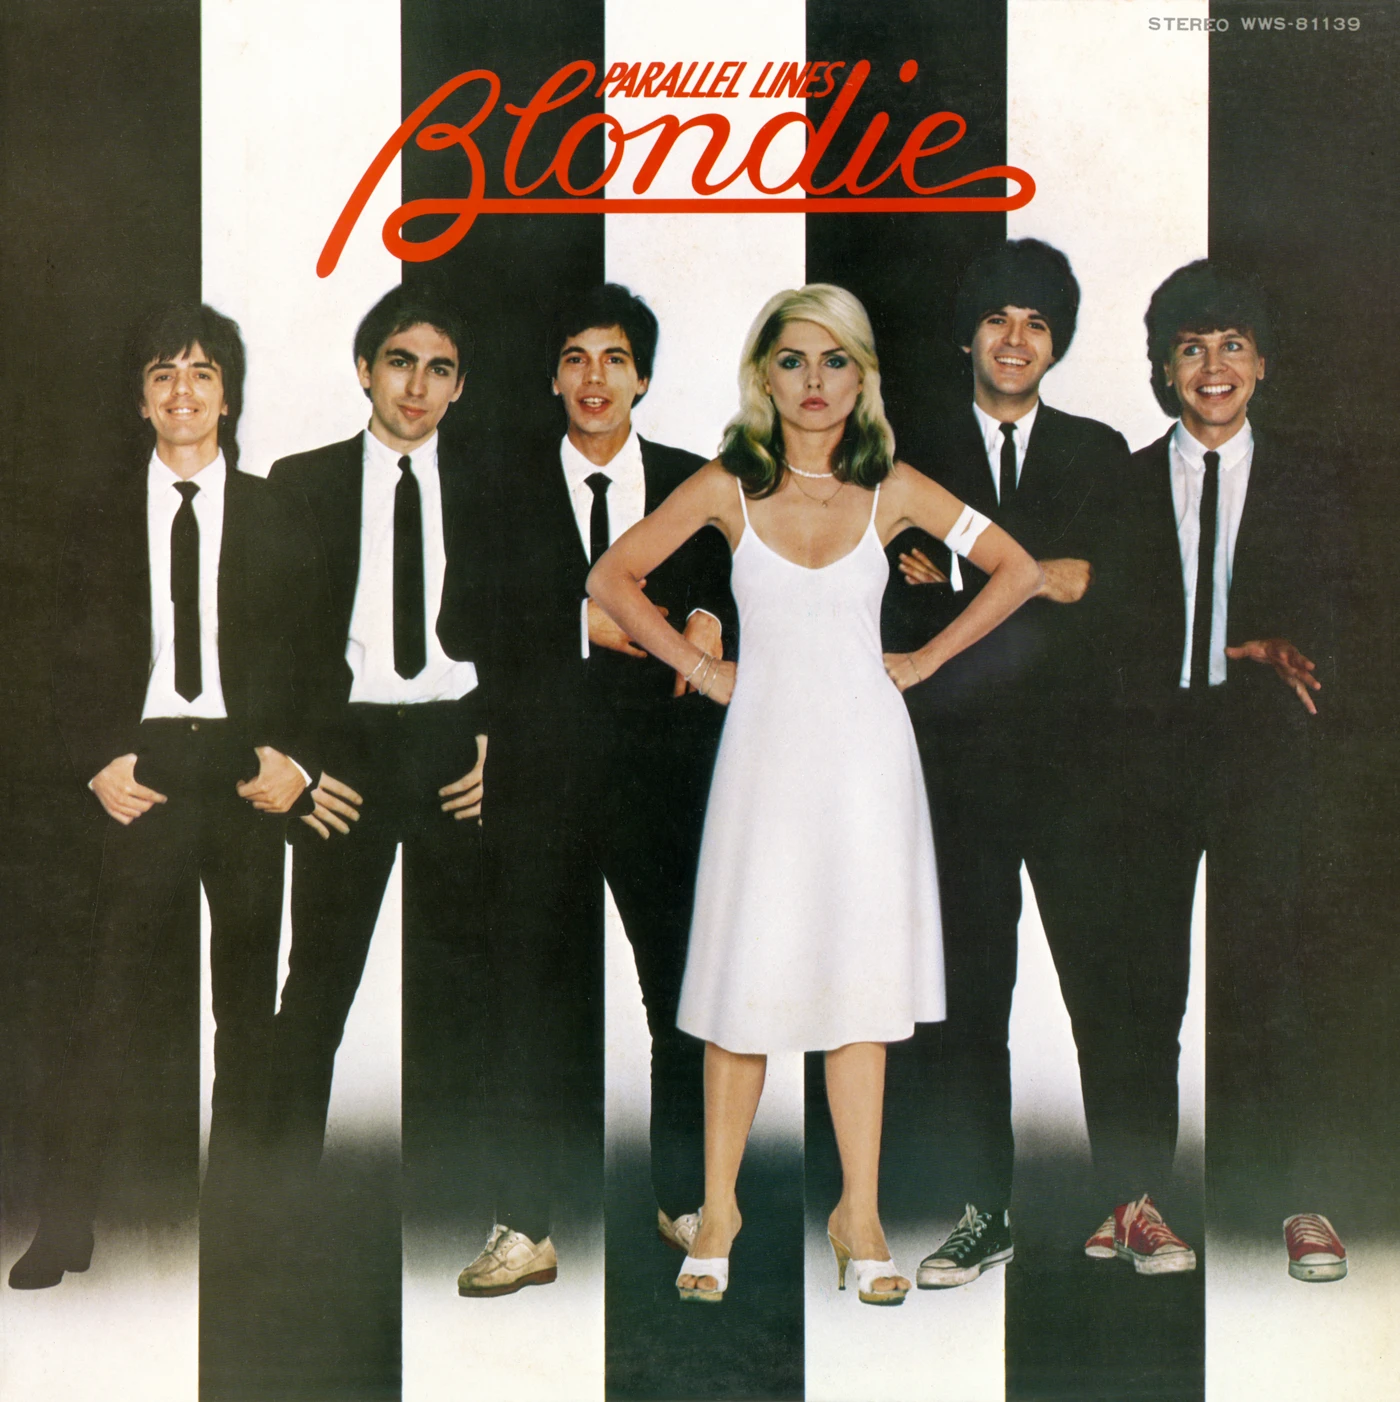 Parallel Lines – Blondie